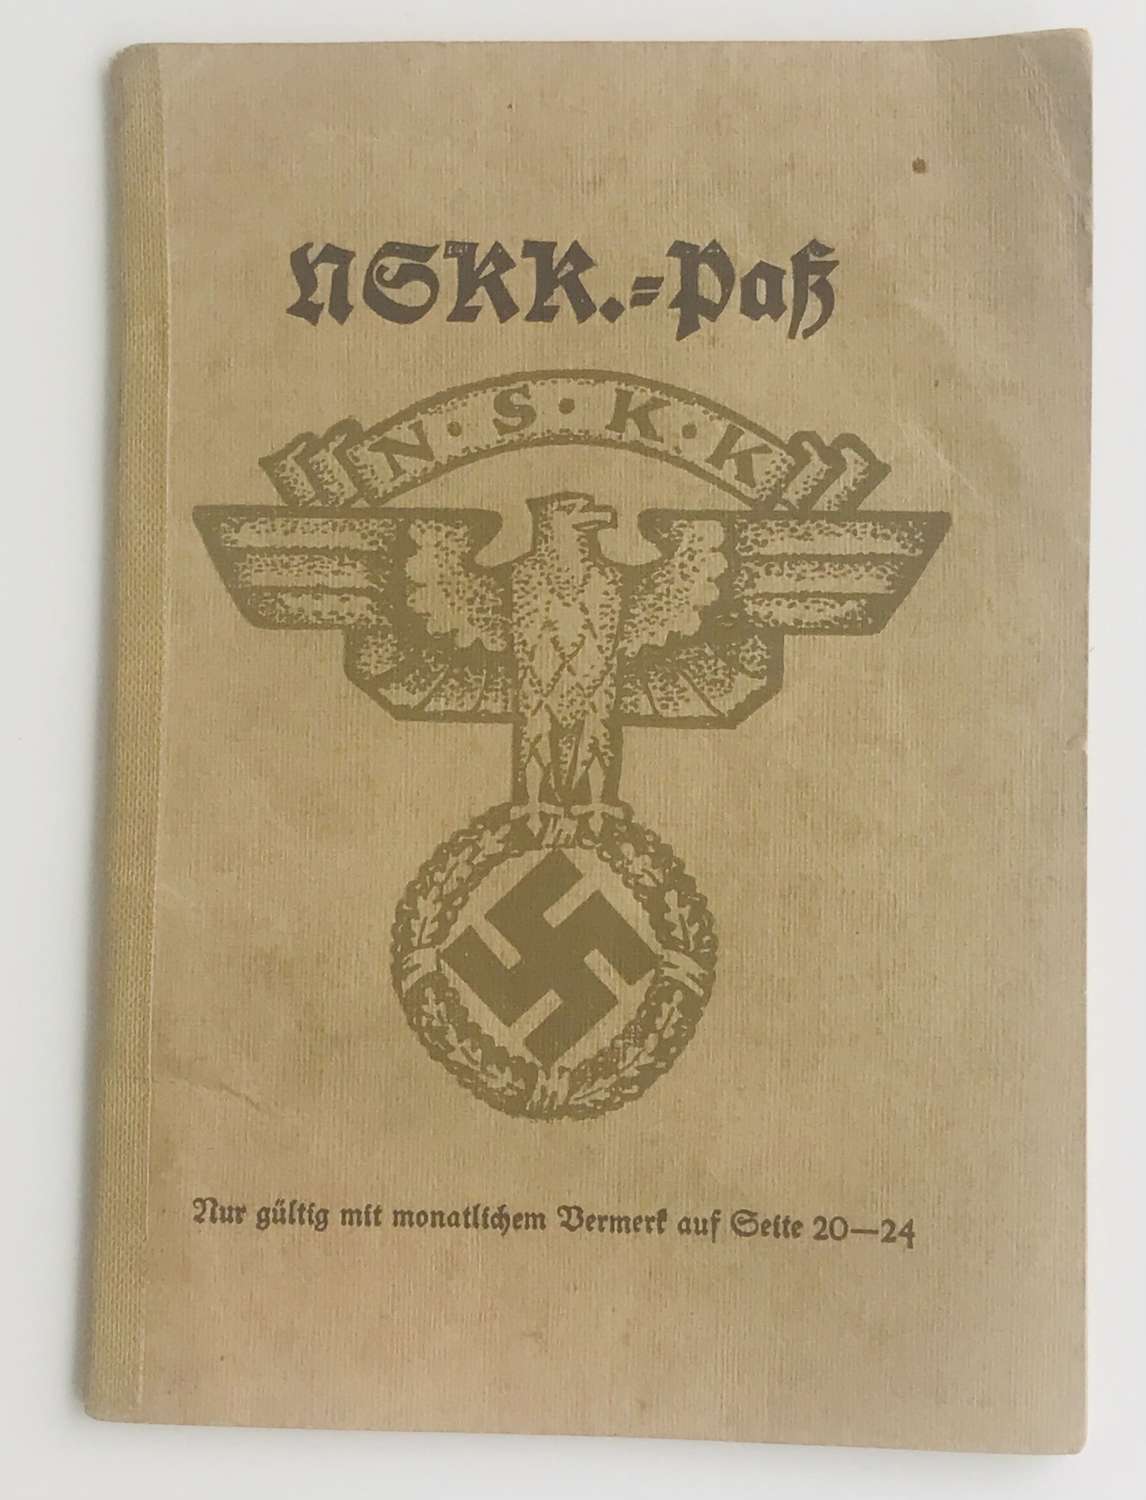 NSKK membership book  1933/43